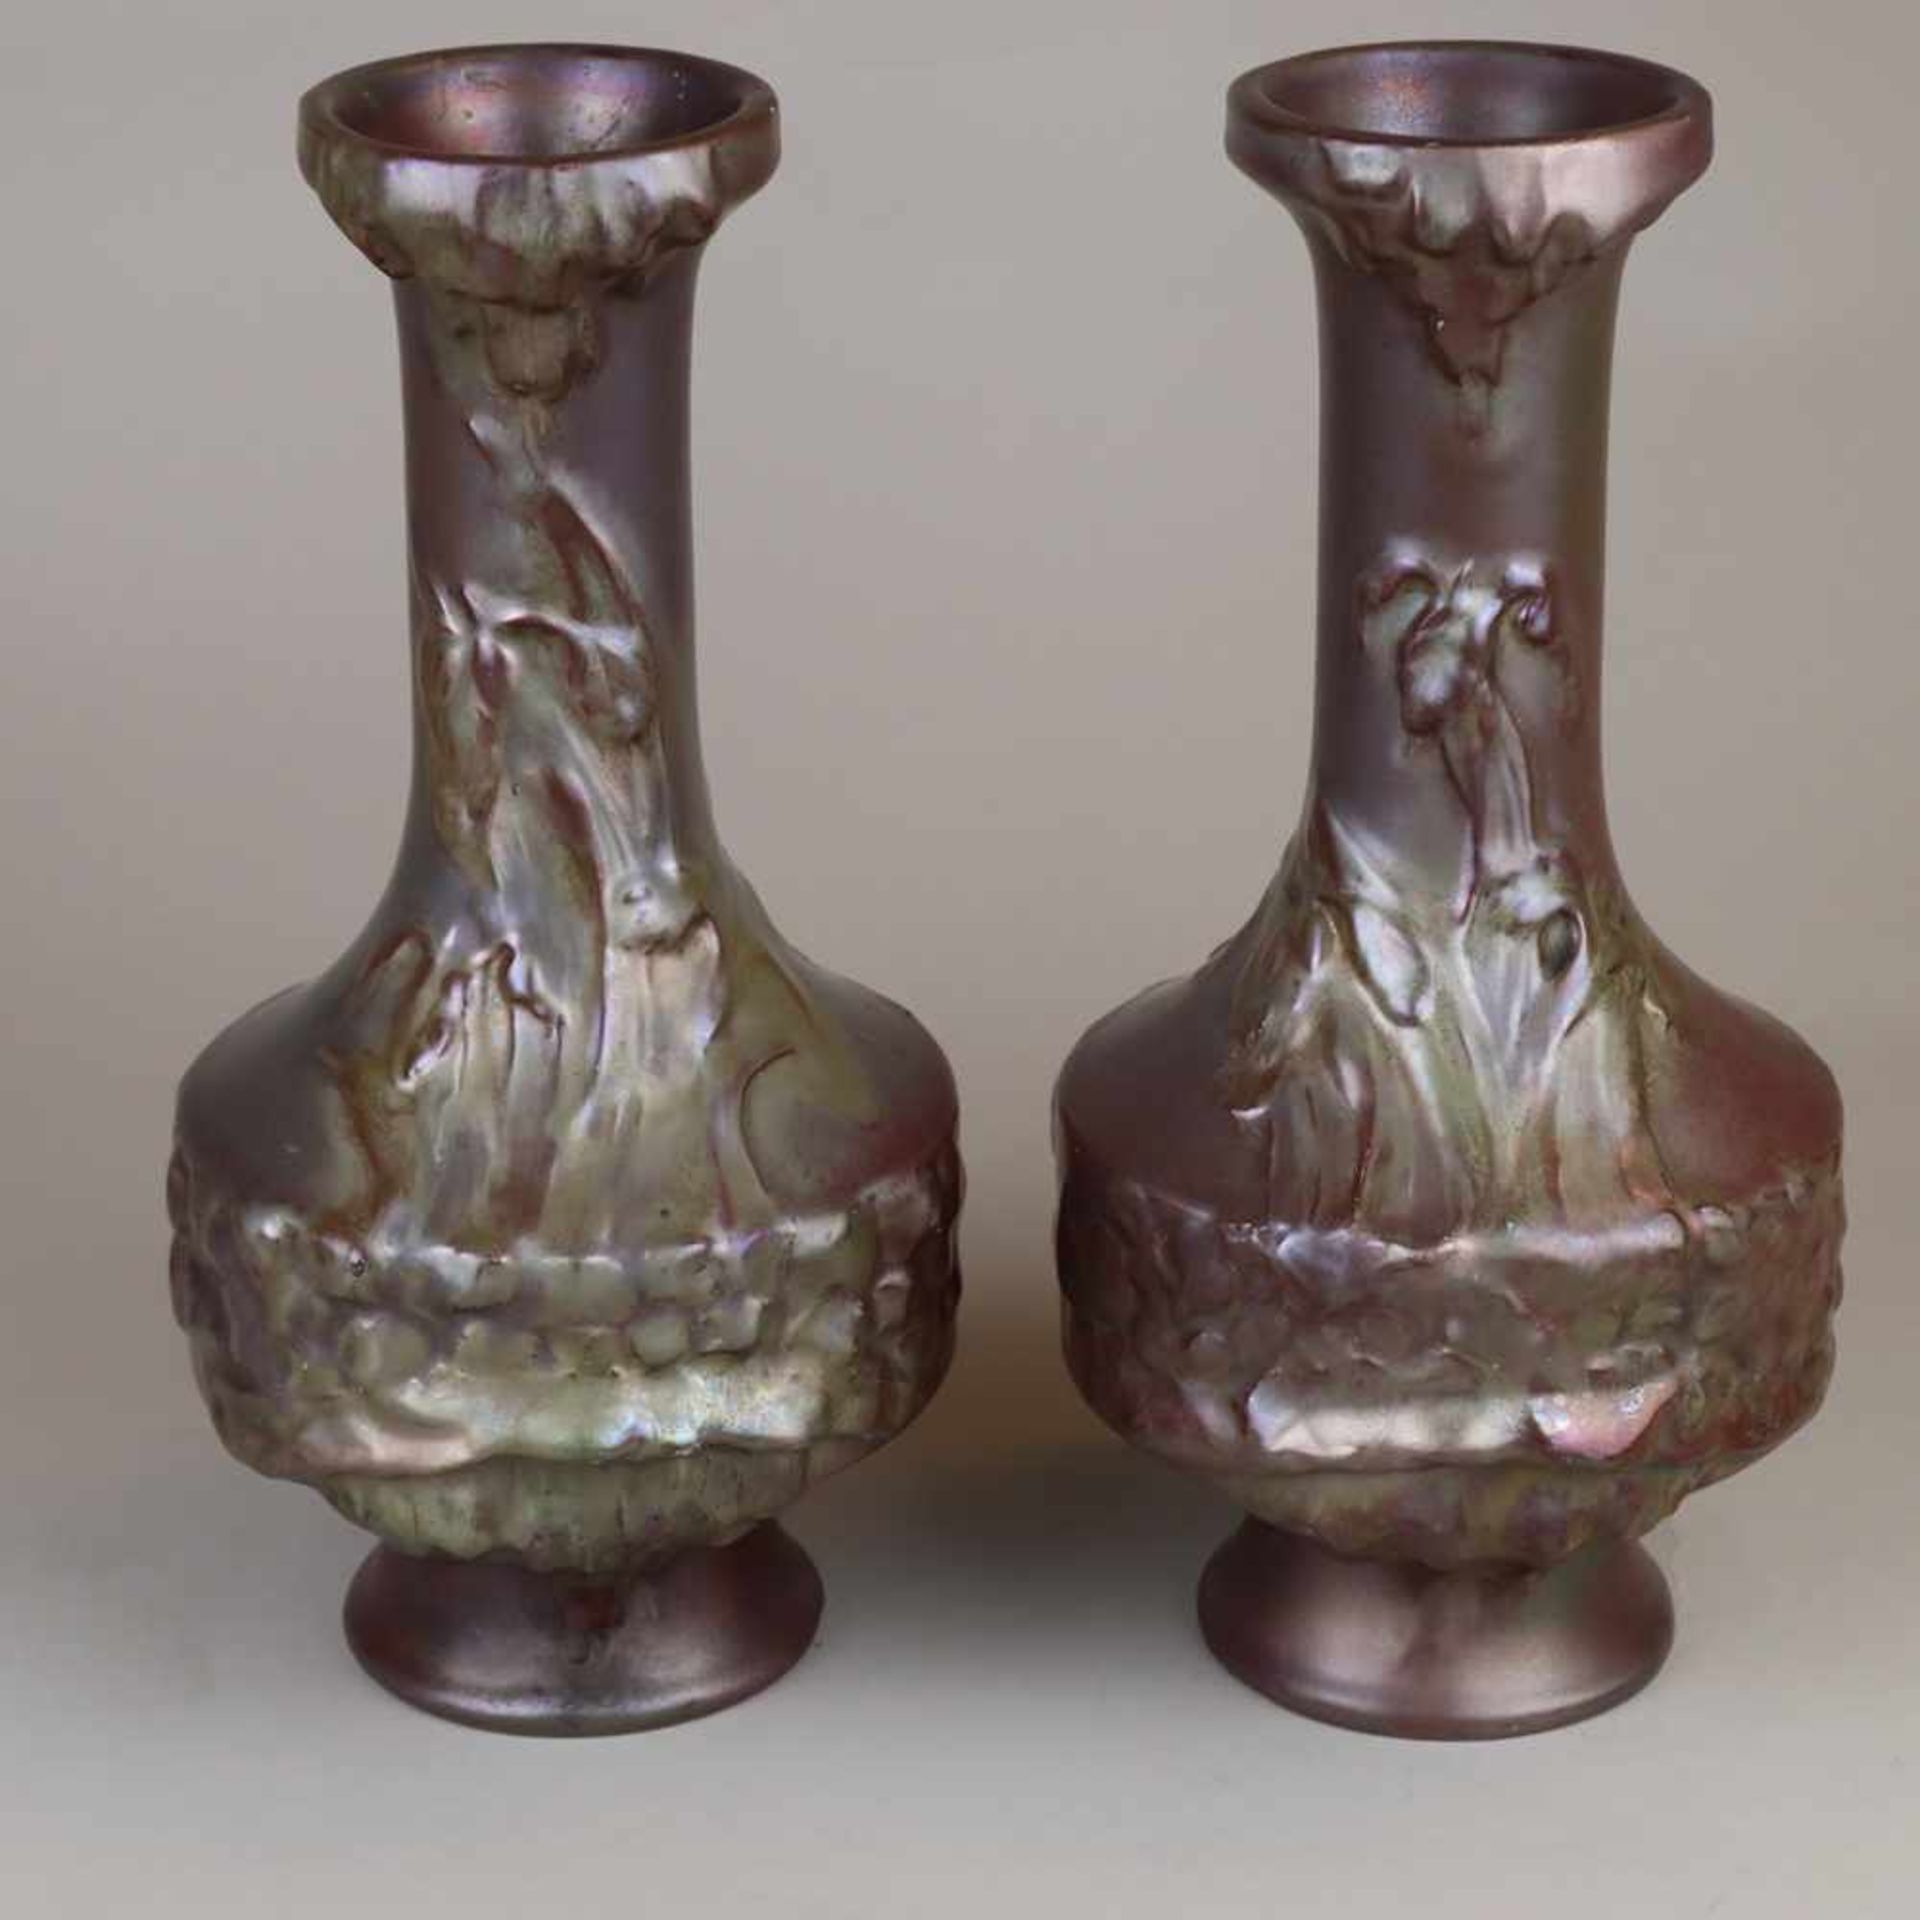 Paar Jugendstil-Vasen - Keramik, violett glasiert, irisiert, floraler Reliefdekor, an der Bodenseite